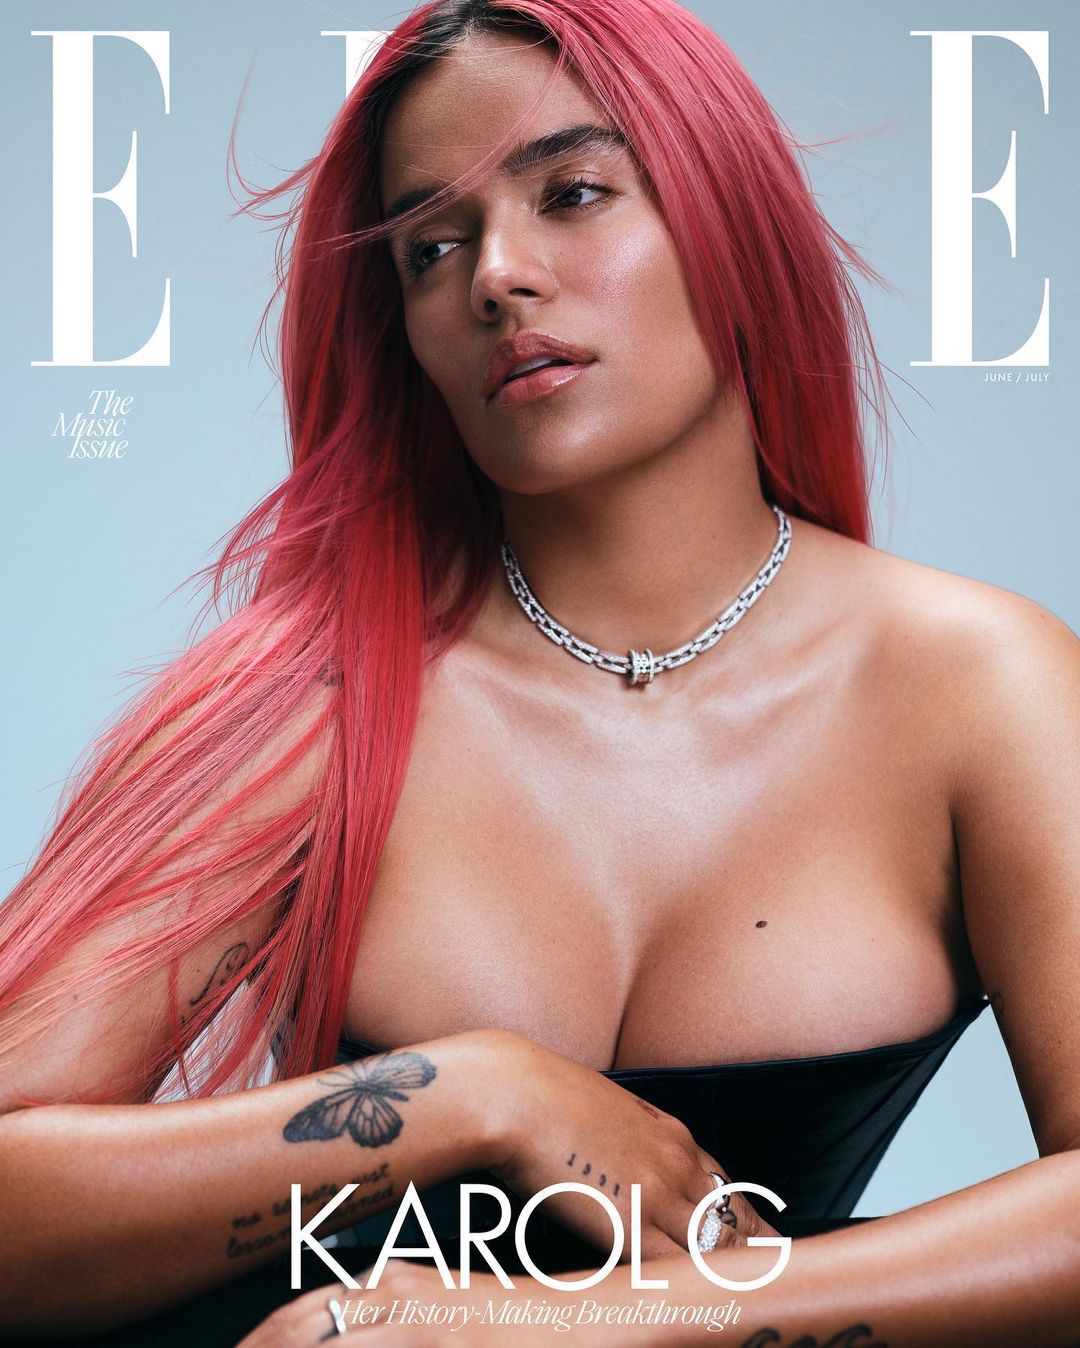 La cantante colombiana será la portada de junio y julio de la revista 'Elle' Estados Unidos.